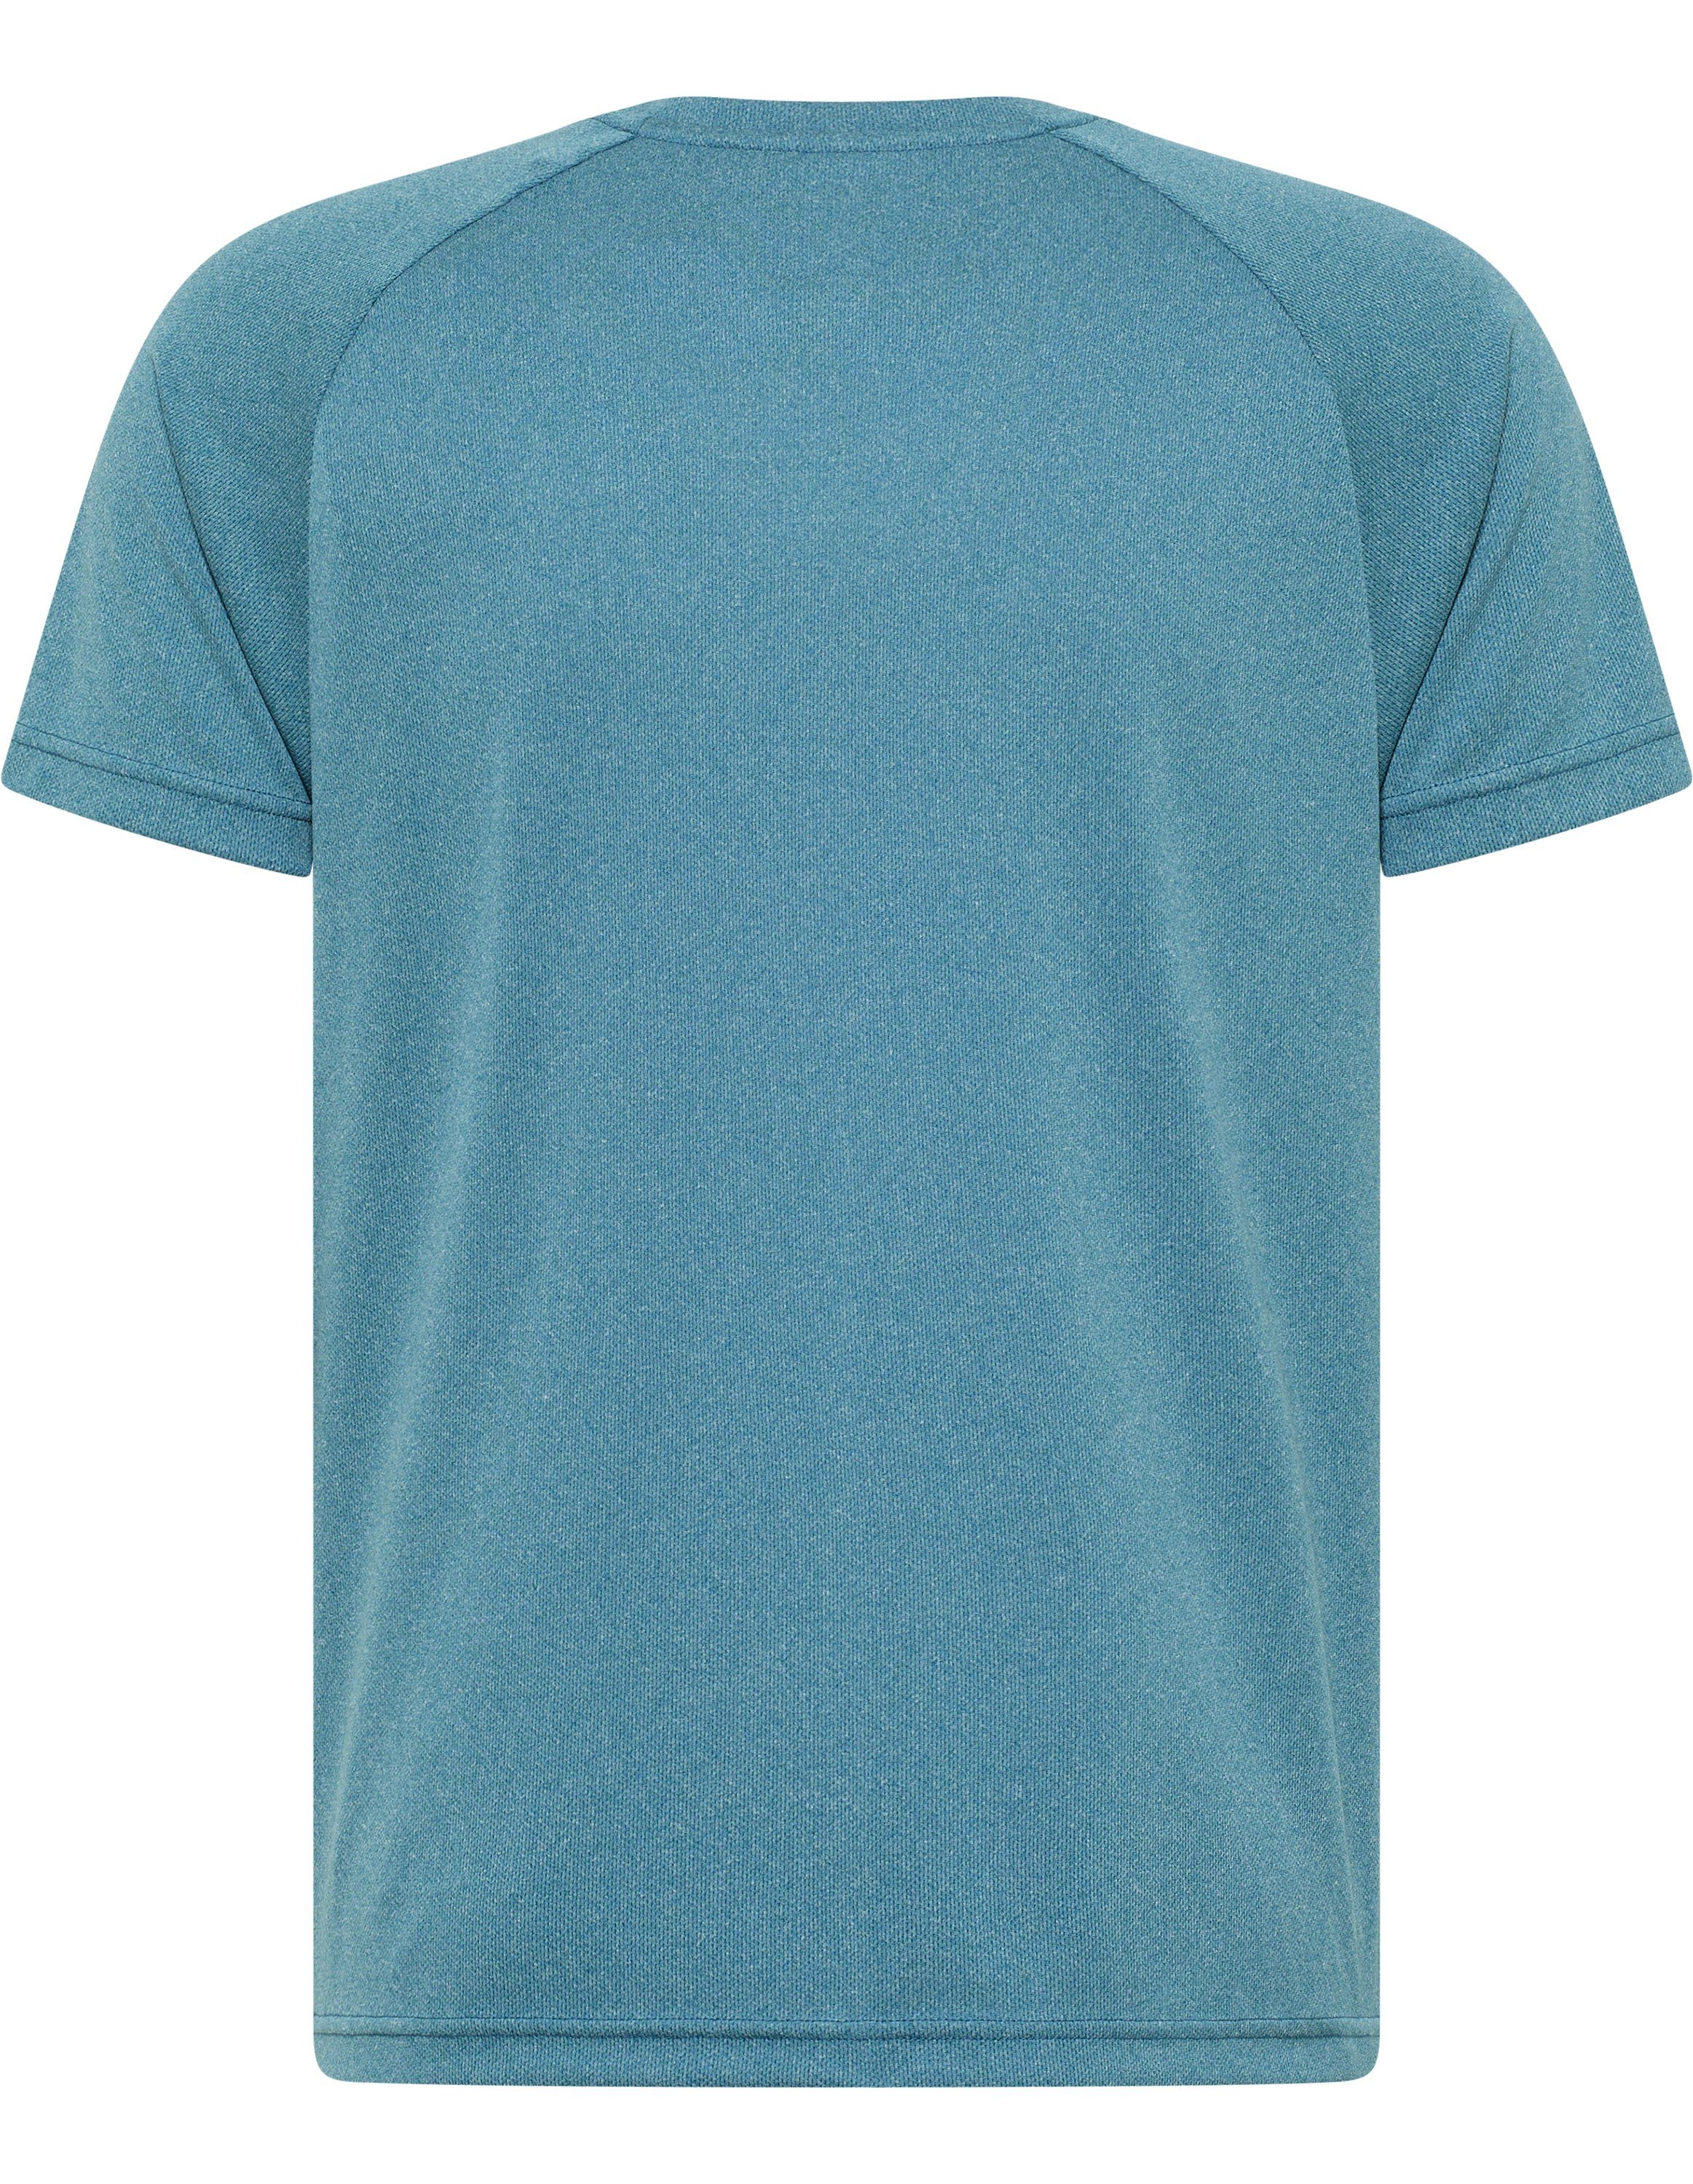 Joy Sportswear T-Shirt T-Shirt blue melange metallic TINO